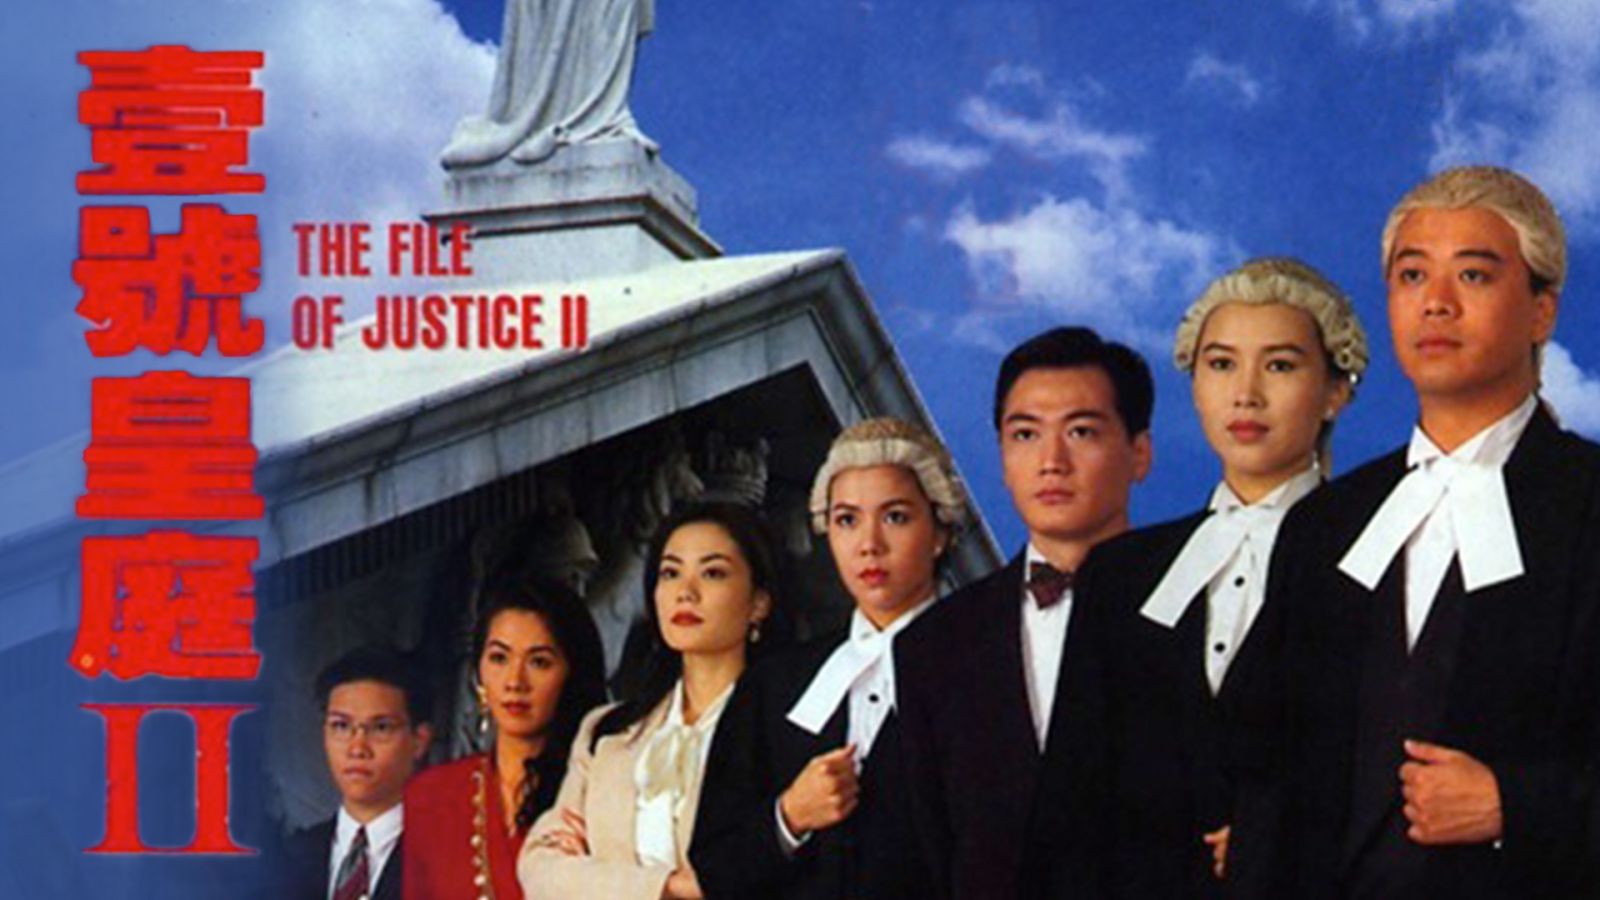 Hồ sơ công lý 2 - The file of justice ii